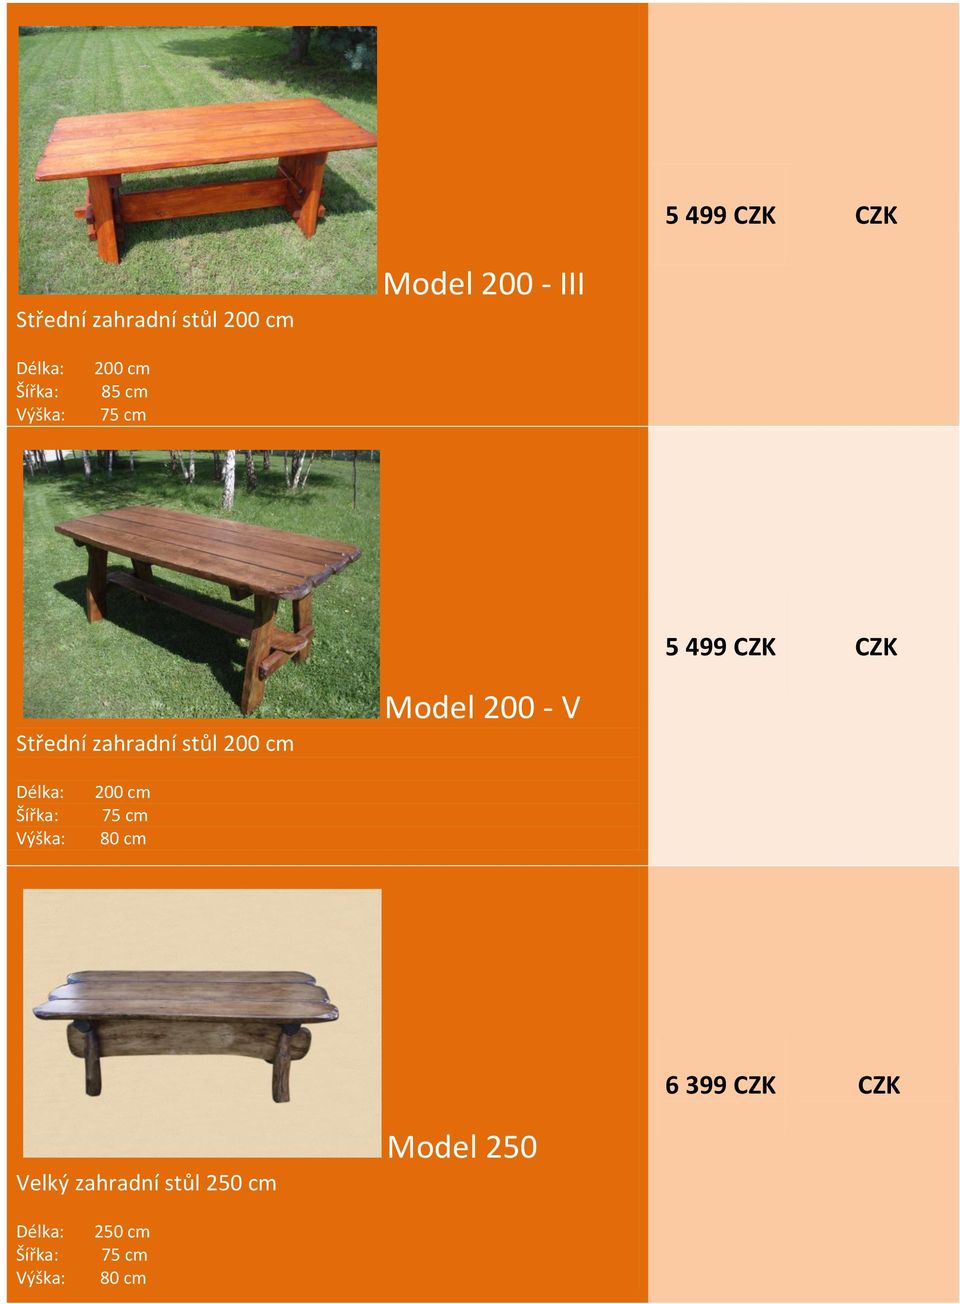 CZK CZK Velký zahradní stůl 250 cm Model 250 250 cm